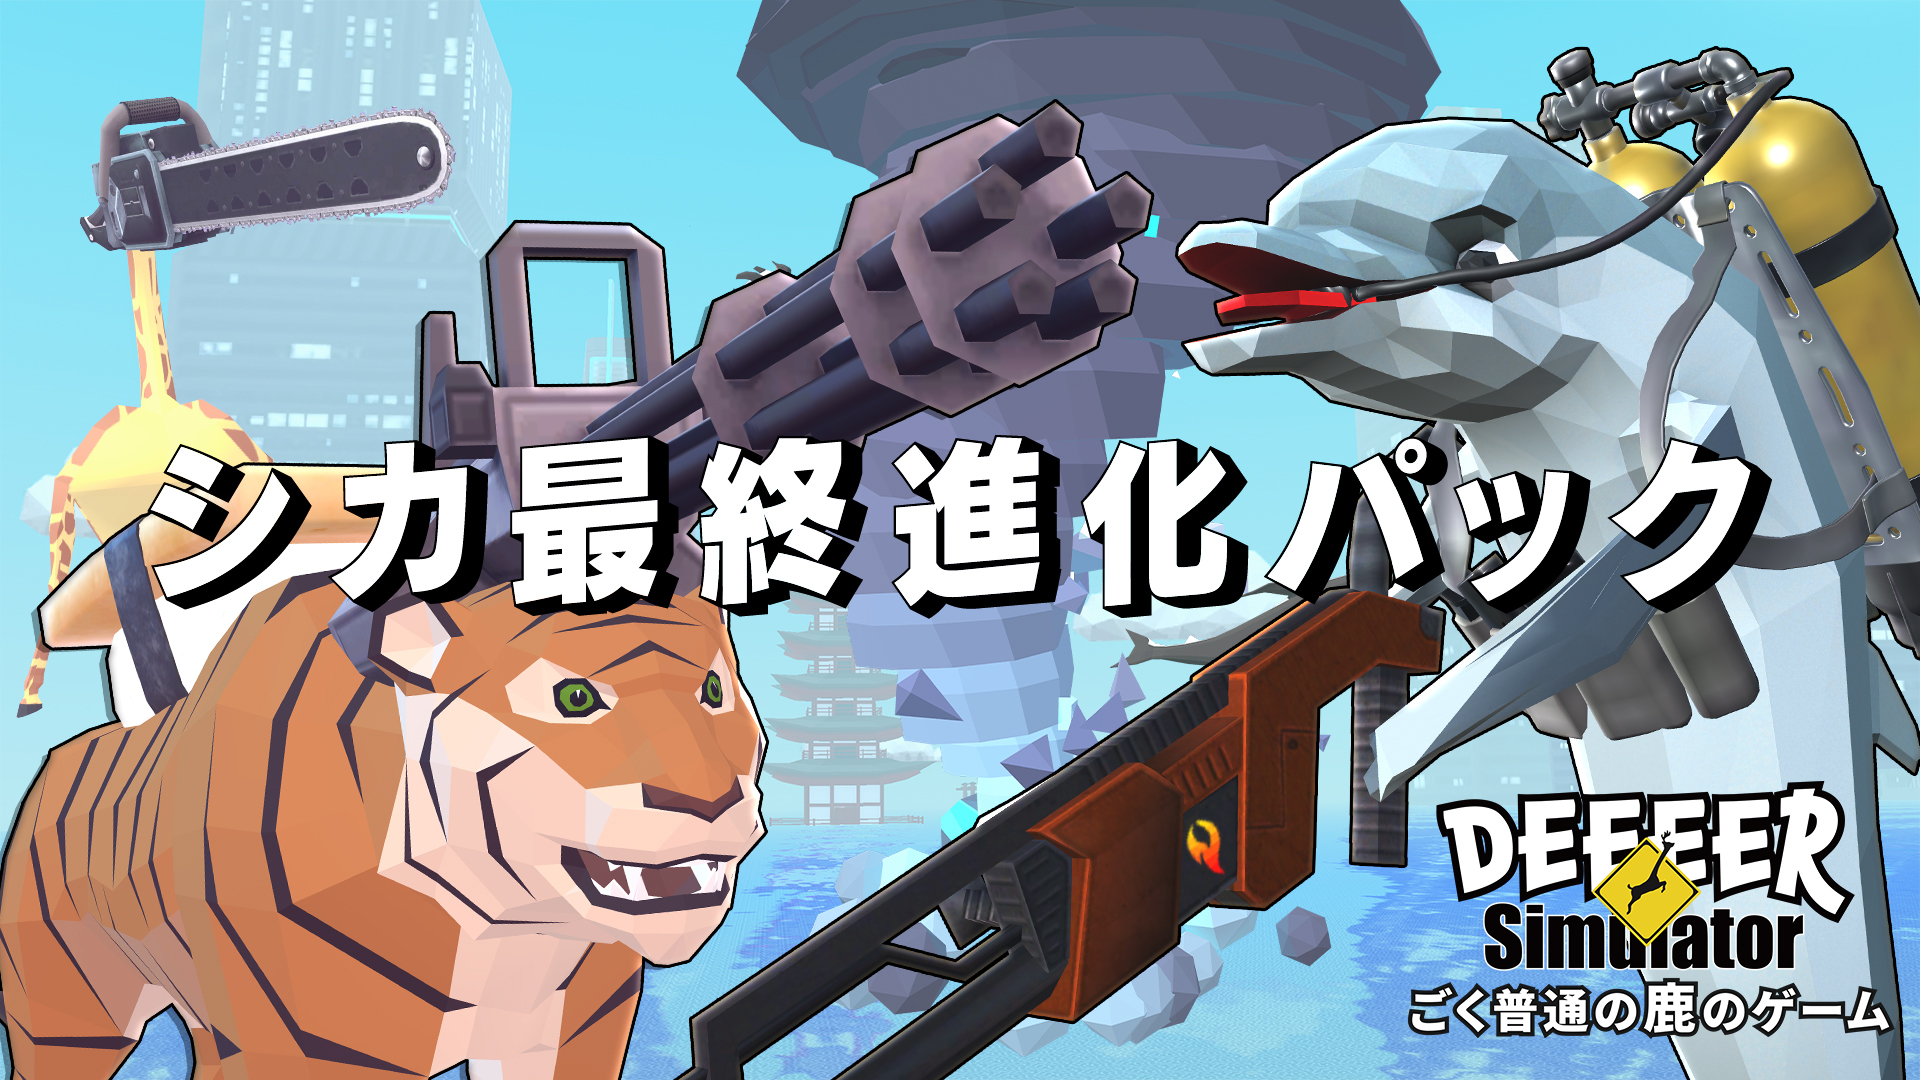 《非常普通的鹿 DEEEER Simulator》 任天堂eShop下载版预约开始！